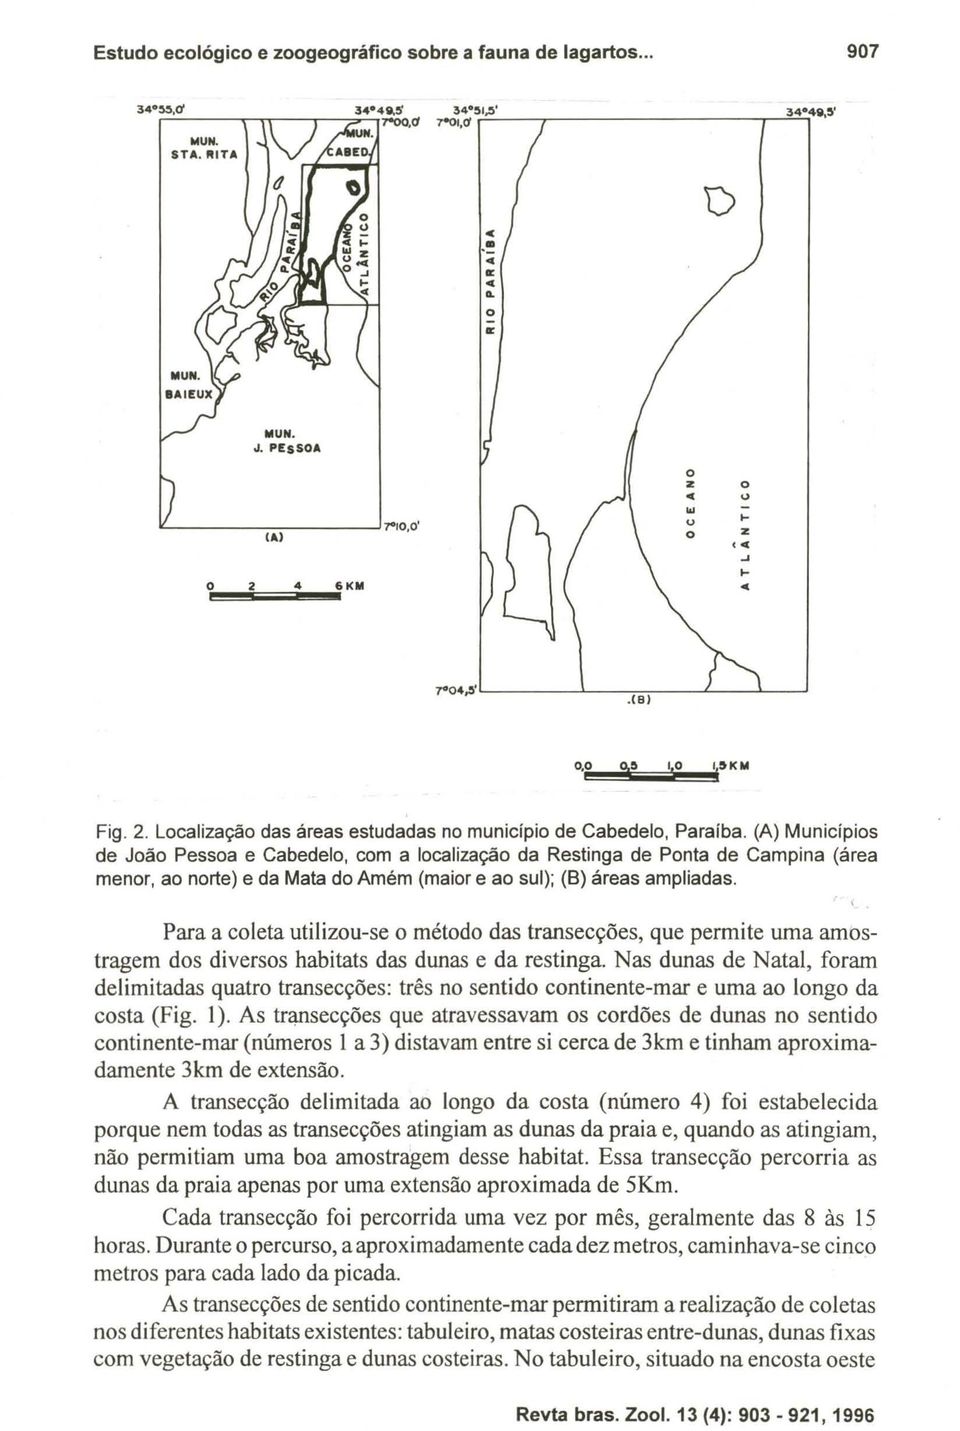 (A) Municípios de João Pessoa e Cabedelo, com a localização da Restinga de Ponta de Campina (área menor, ao norte) e da Mata do Amém (maior e ao sul); (B) áreas ampliadas.